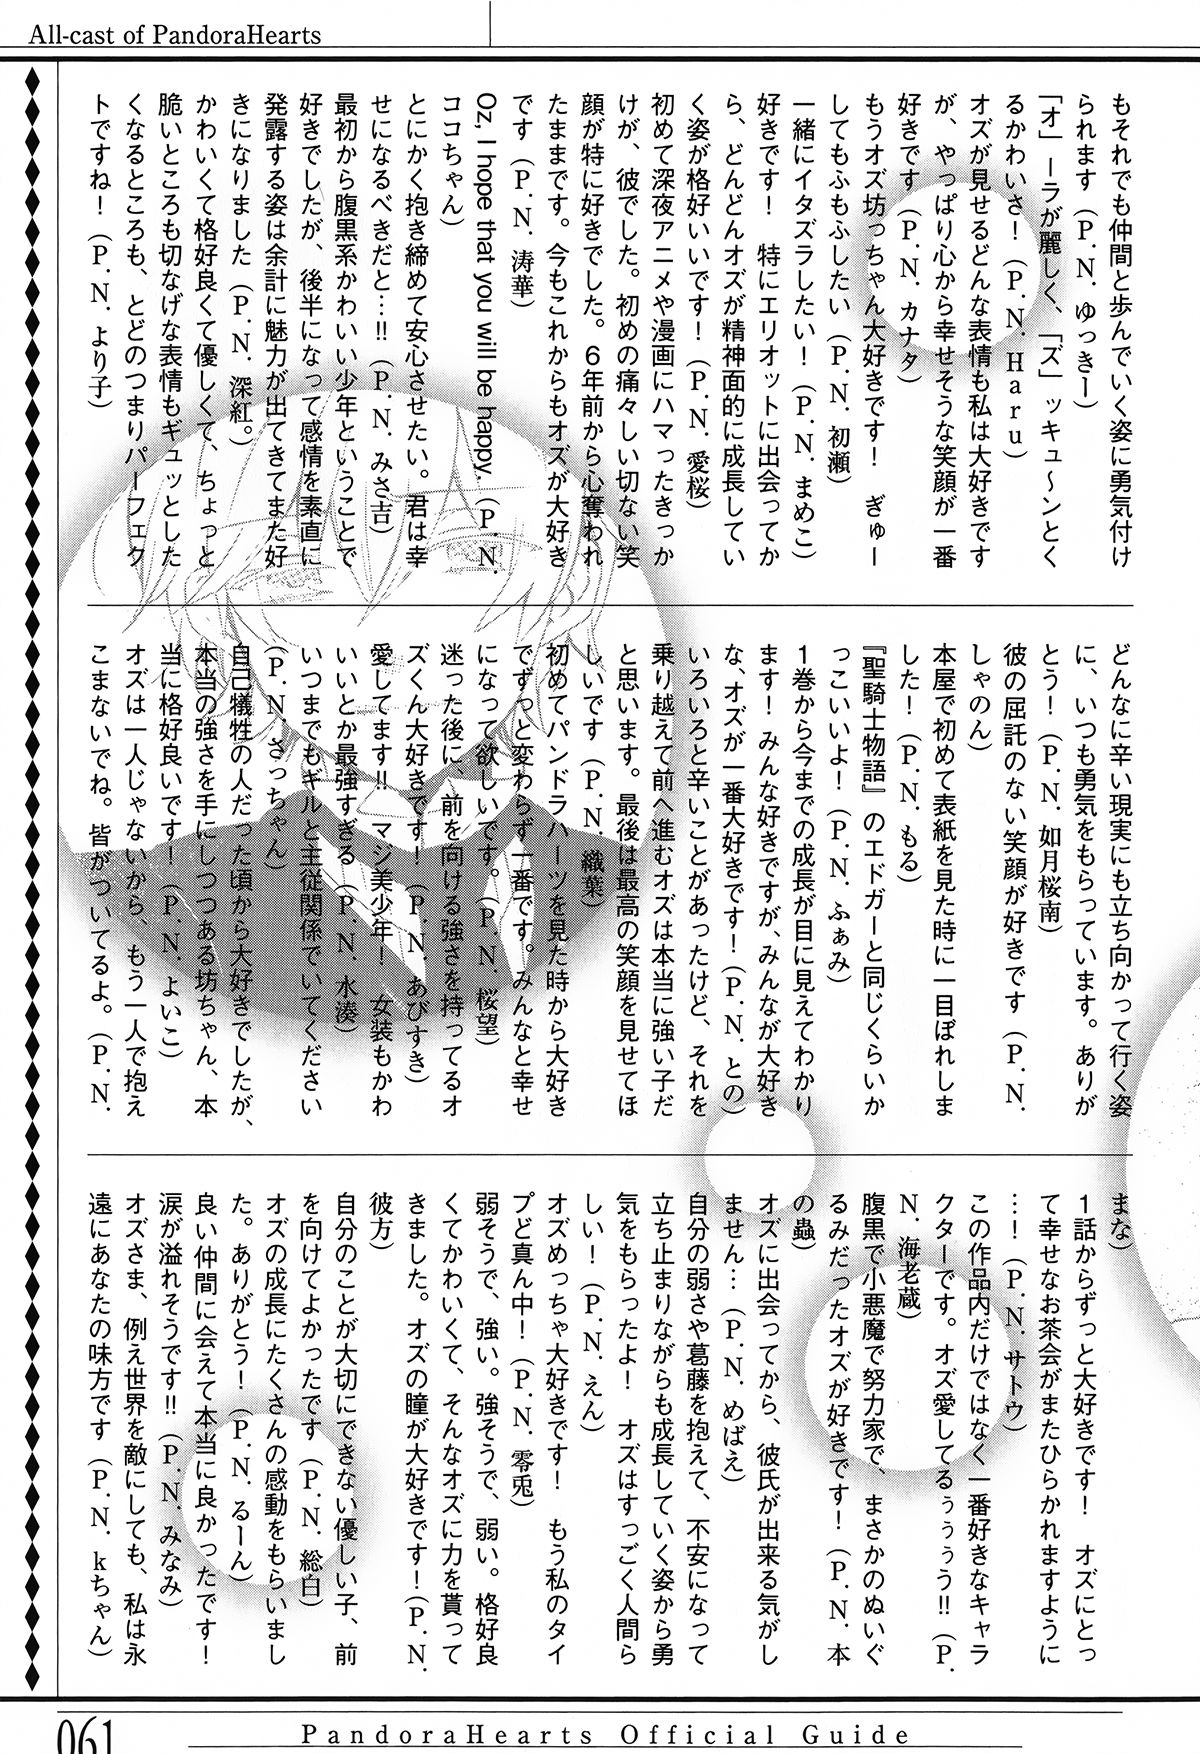 Pandora Hearts Guidebook 24+1: Last Dance パンドラハーツ オフィシャルガイド 24 + 1 ~Last Dance! 64